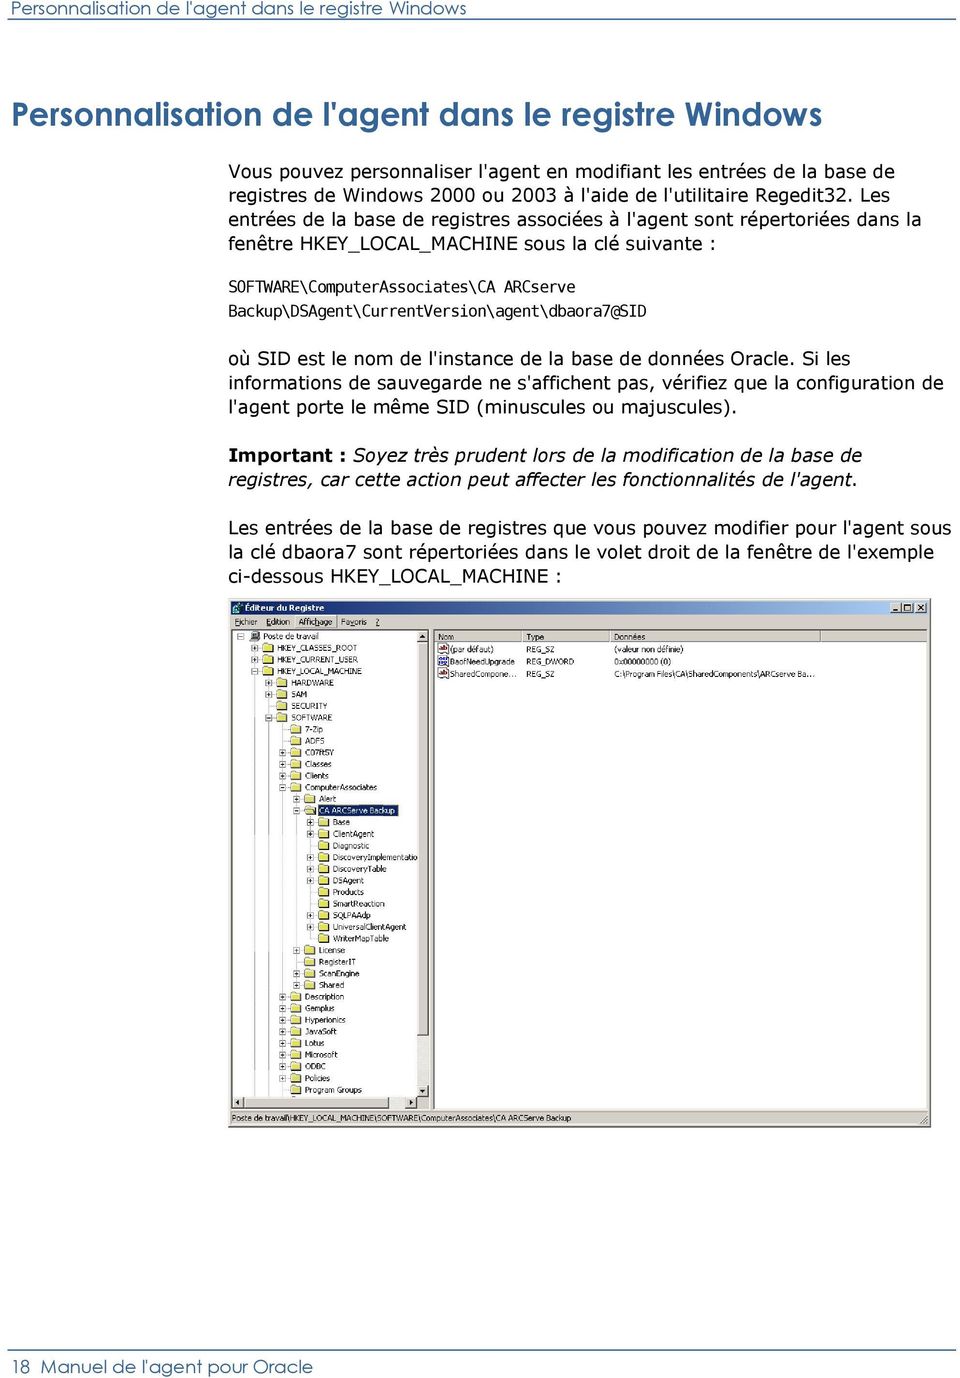 Les entrées de la base de registres associées à l'agent sont répertoriées dans la fenêtre HKEY_LOCAL_MACHINE sous la clé suivante : SOFTWARE\ComputerAssociates\CA ARCserve